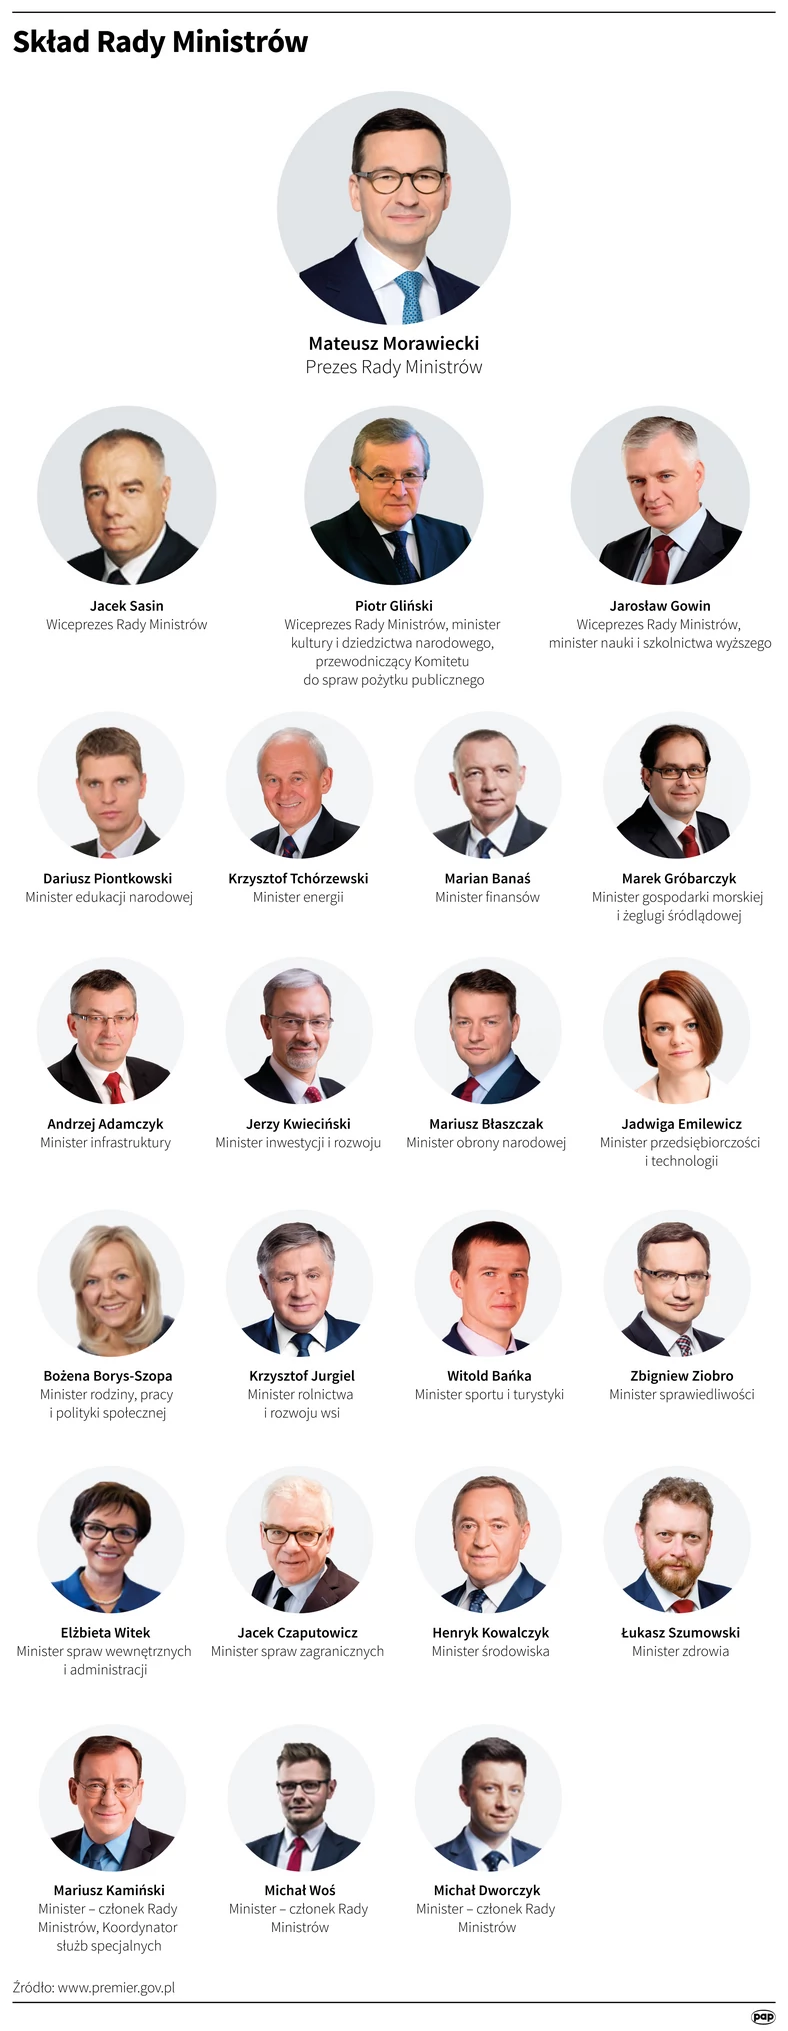 Skład Rady Ministrów